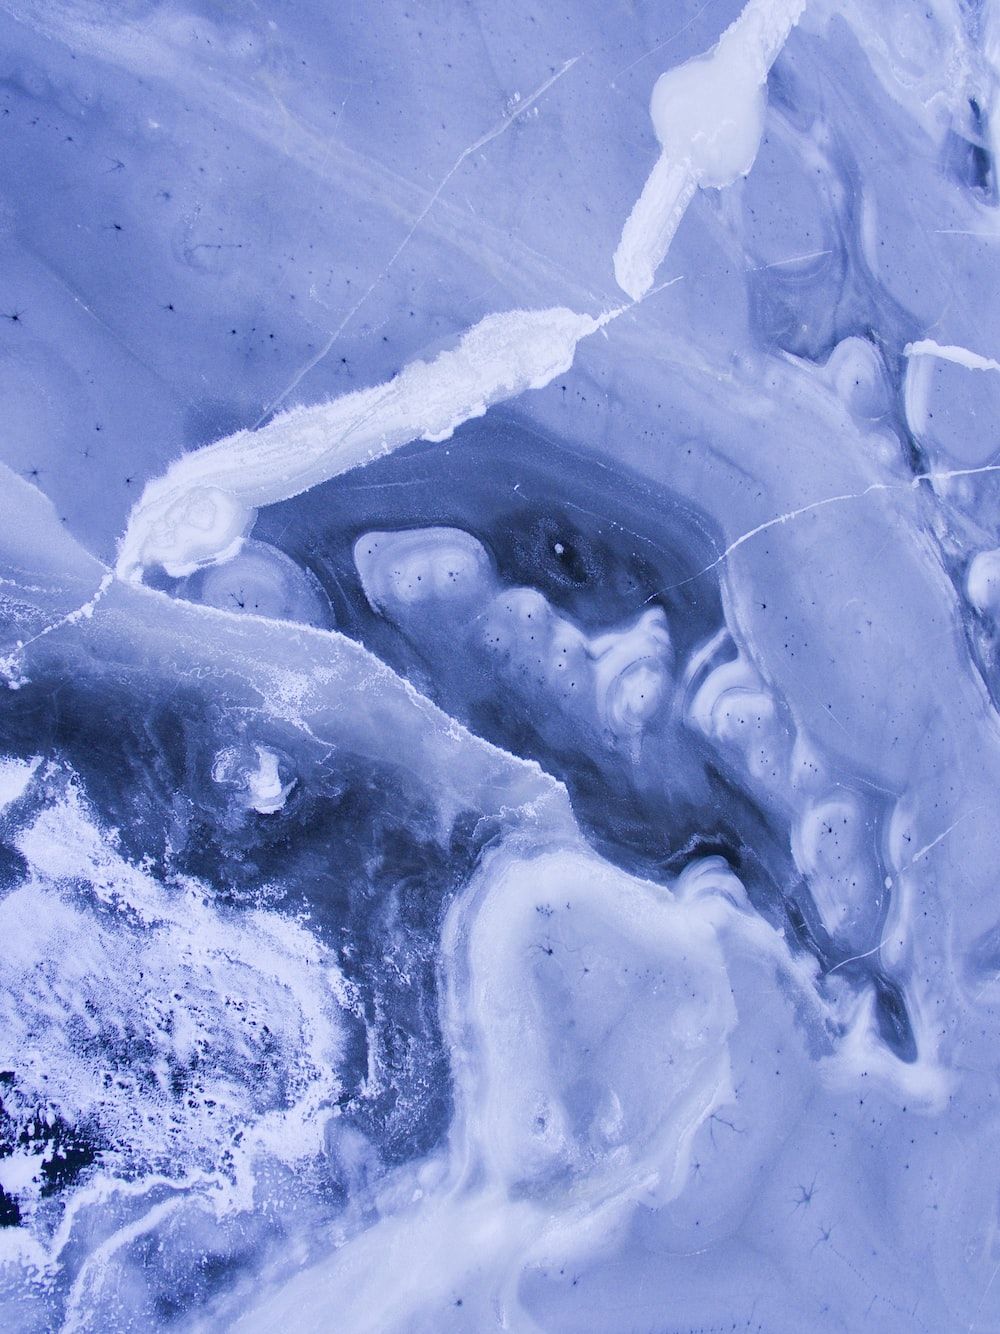  Eis Hintergrundbild 1000x1334. Foto zum Thema Eine Nahaufnahme von Eis und Wasser